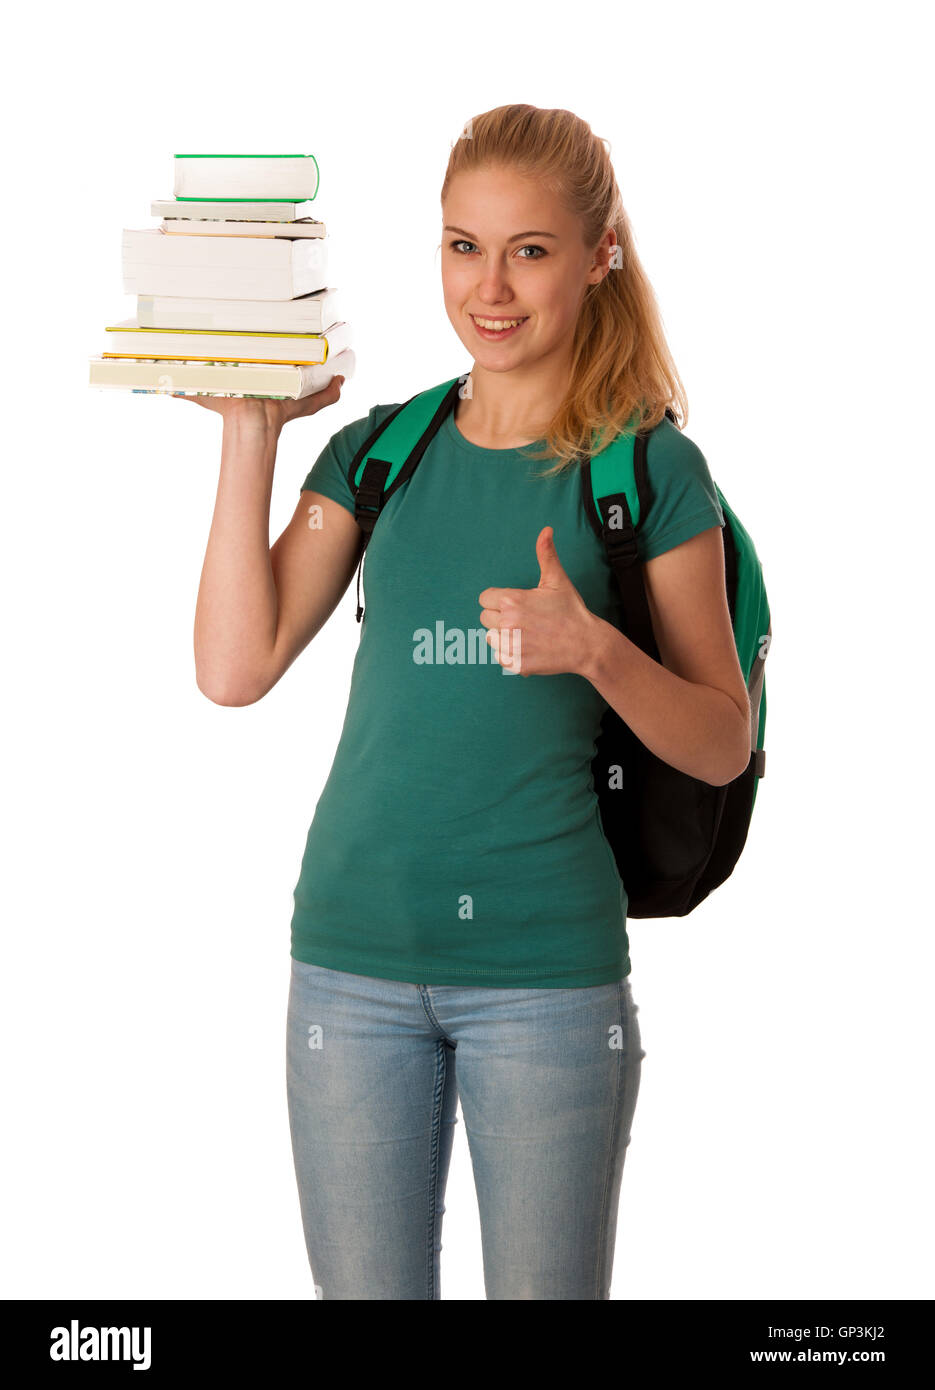 Étudiante blonde avec pile de livres sur la main et sac à dos gesturing ok signe, heureux d'acquérir des connaissances et apprendre de nouvelles choses. Banque D'Images